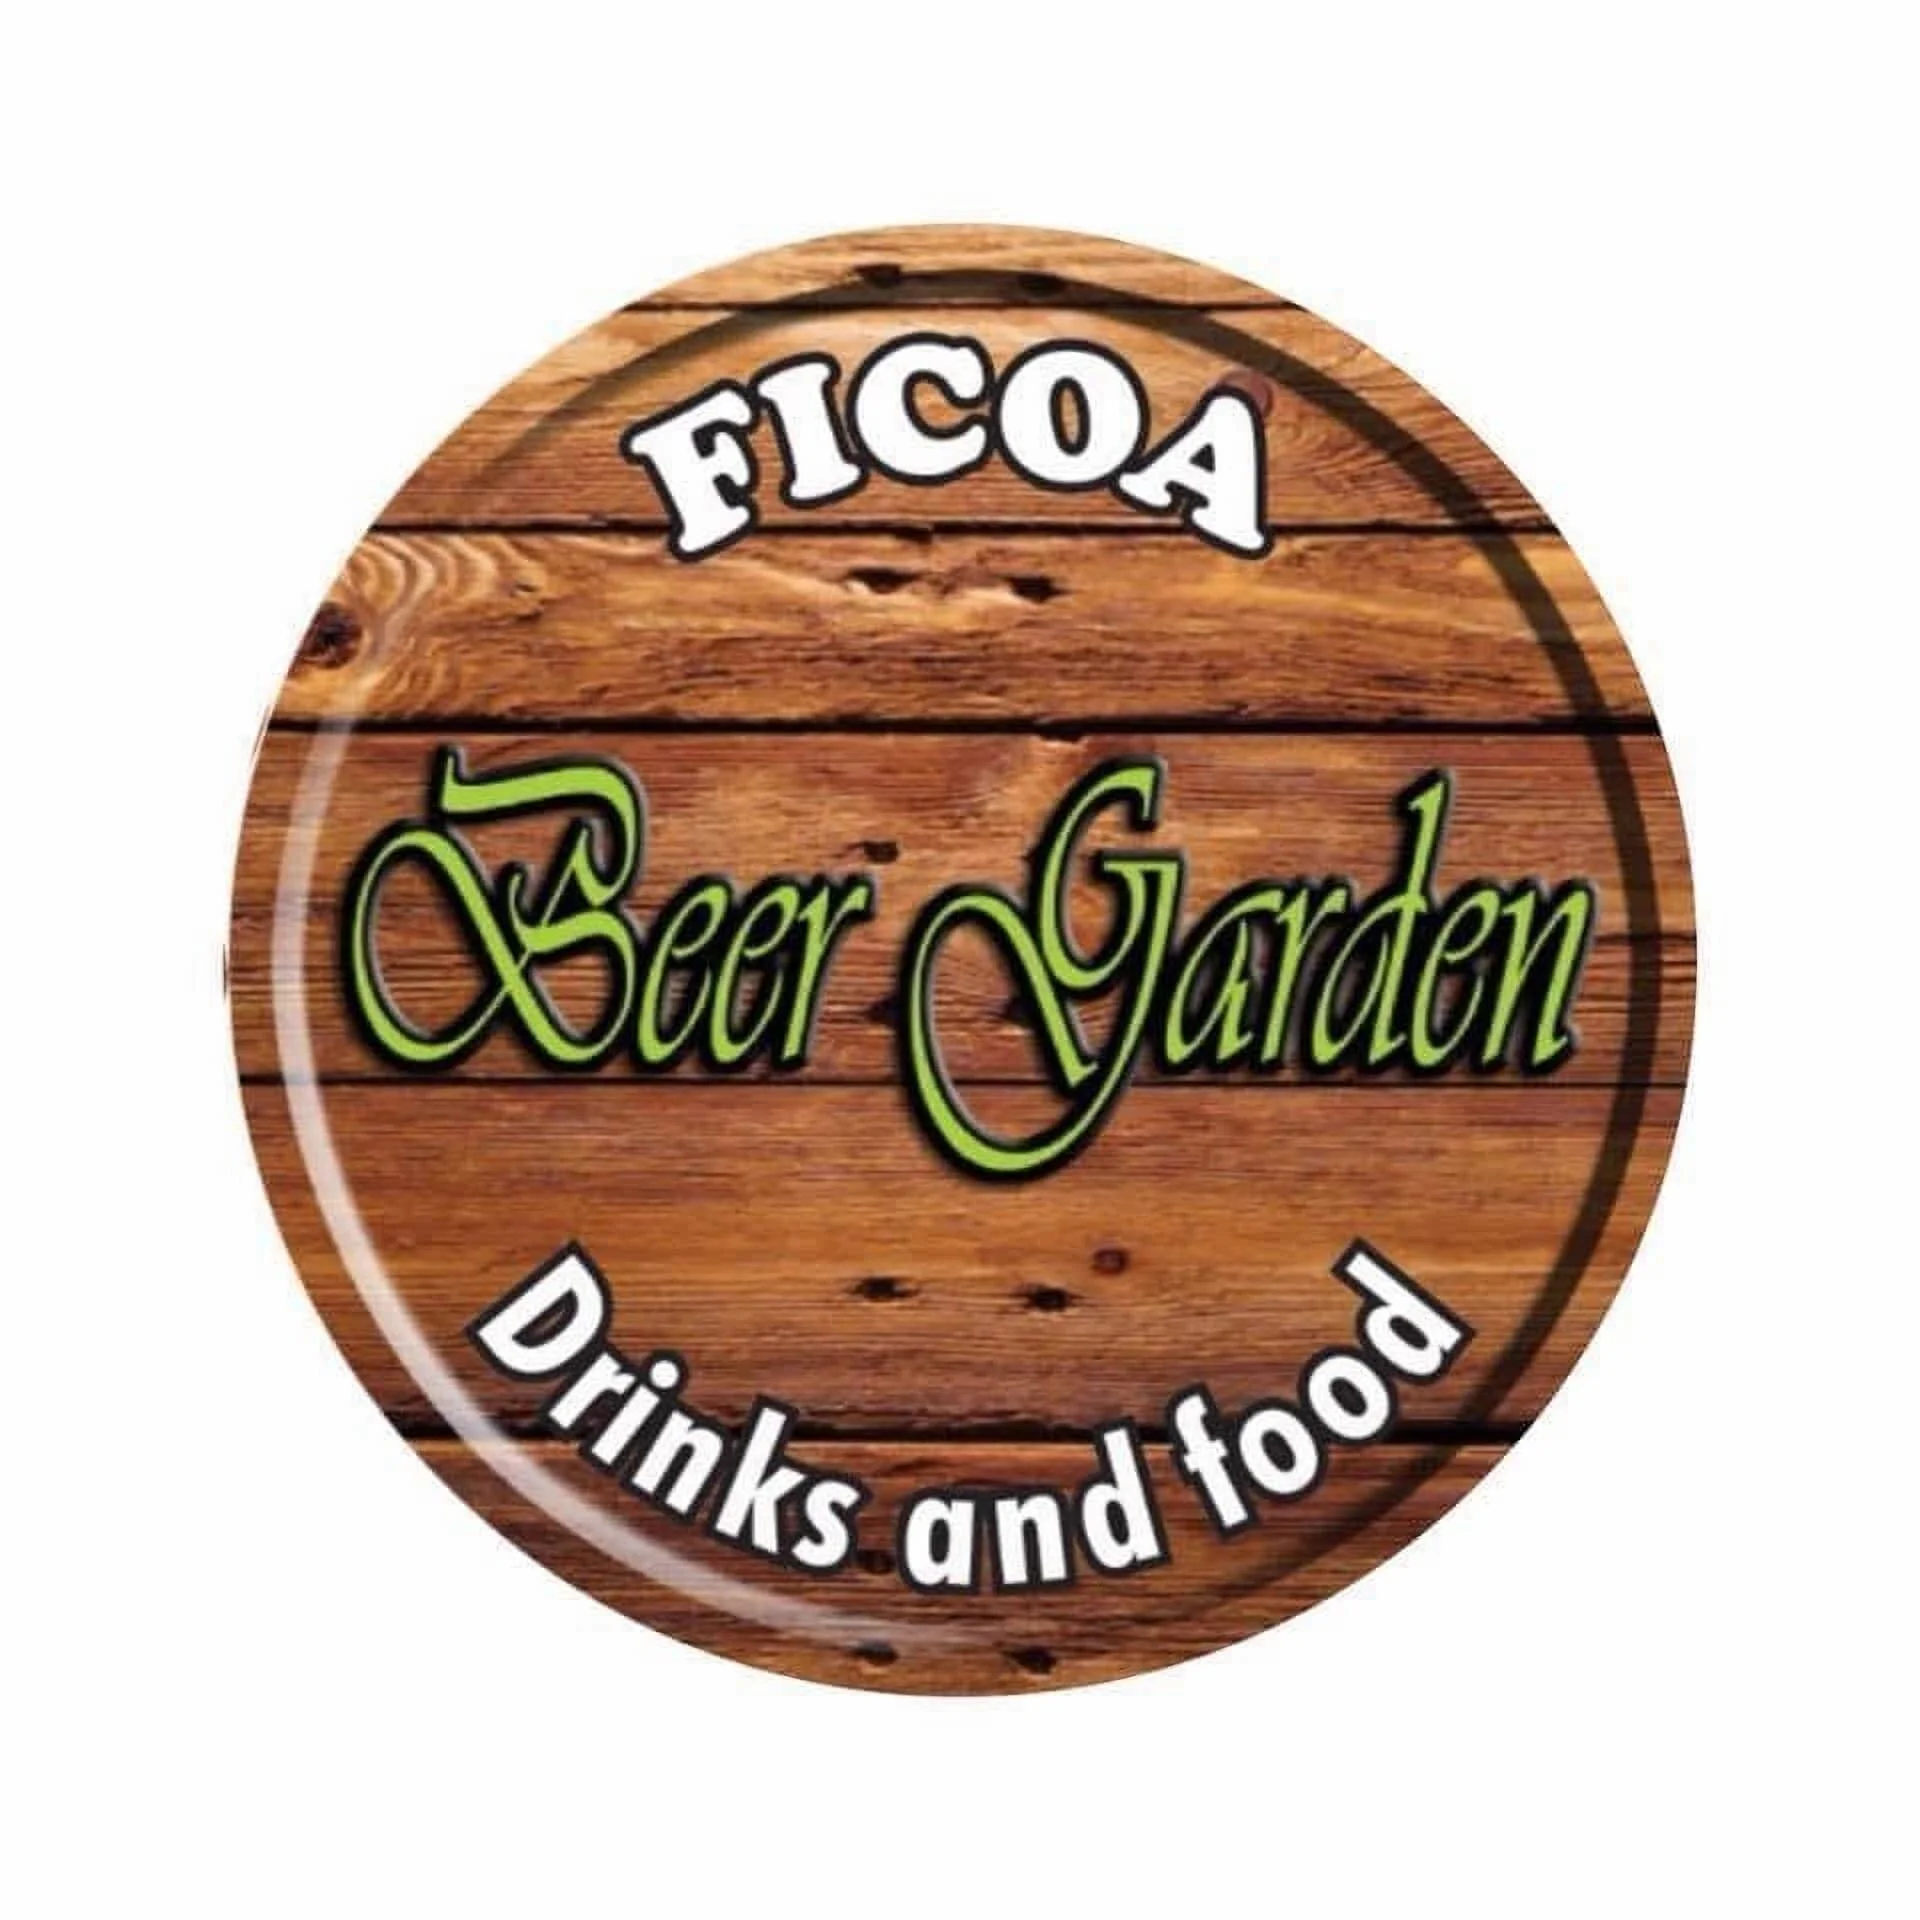 Ficoa Beer Garden-4454